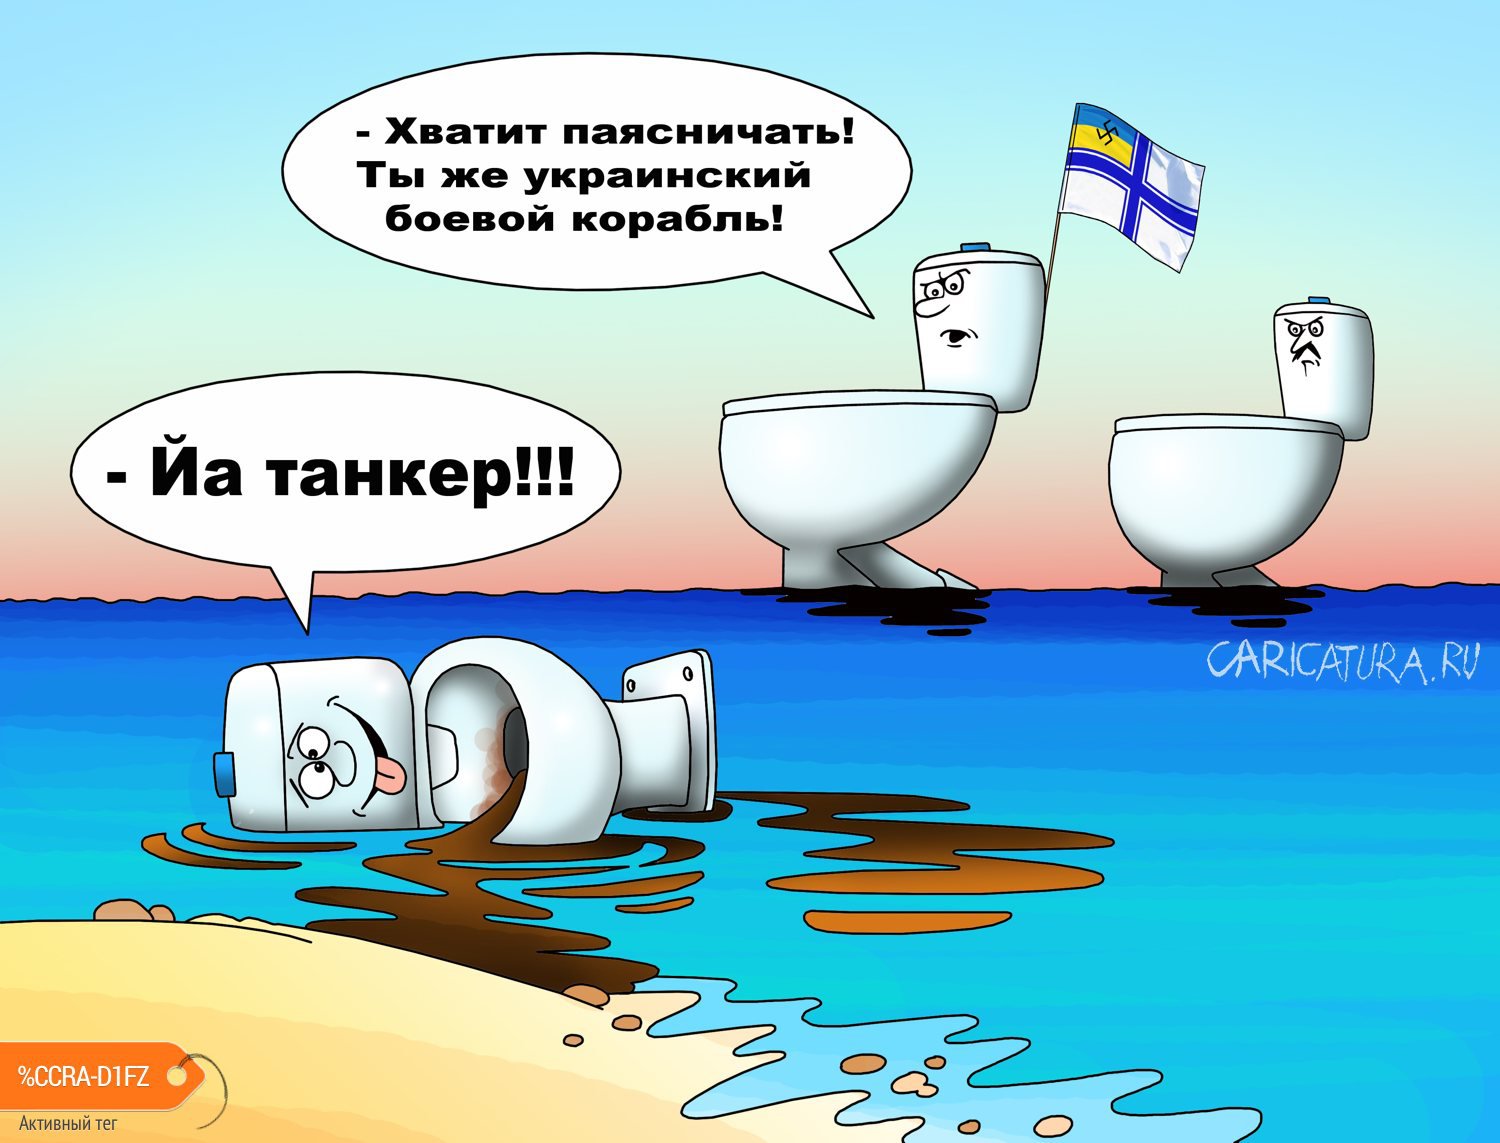 Карикатура "Украинский танкер сел на мель", Сергей Корсун